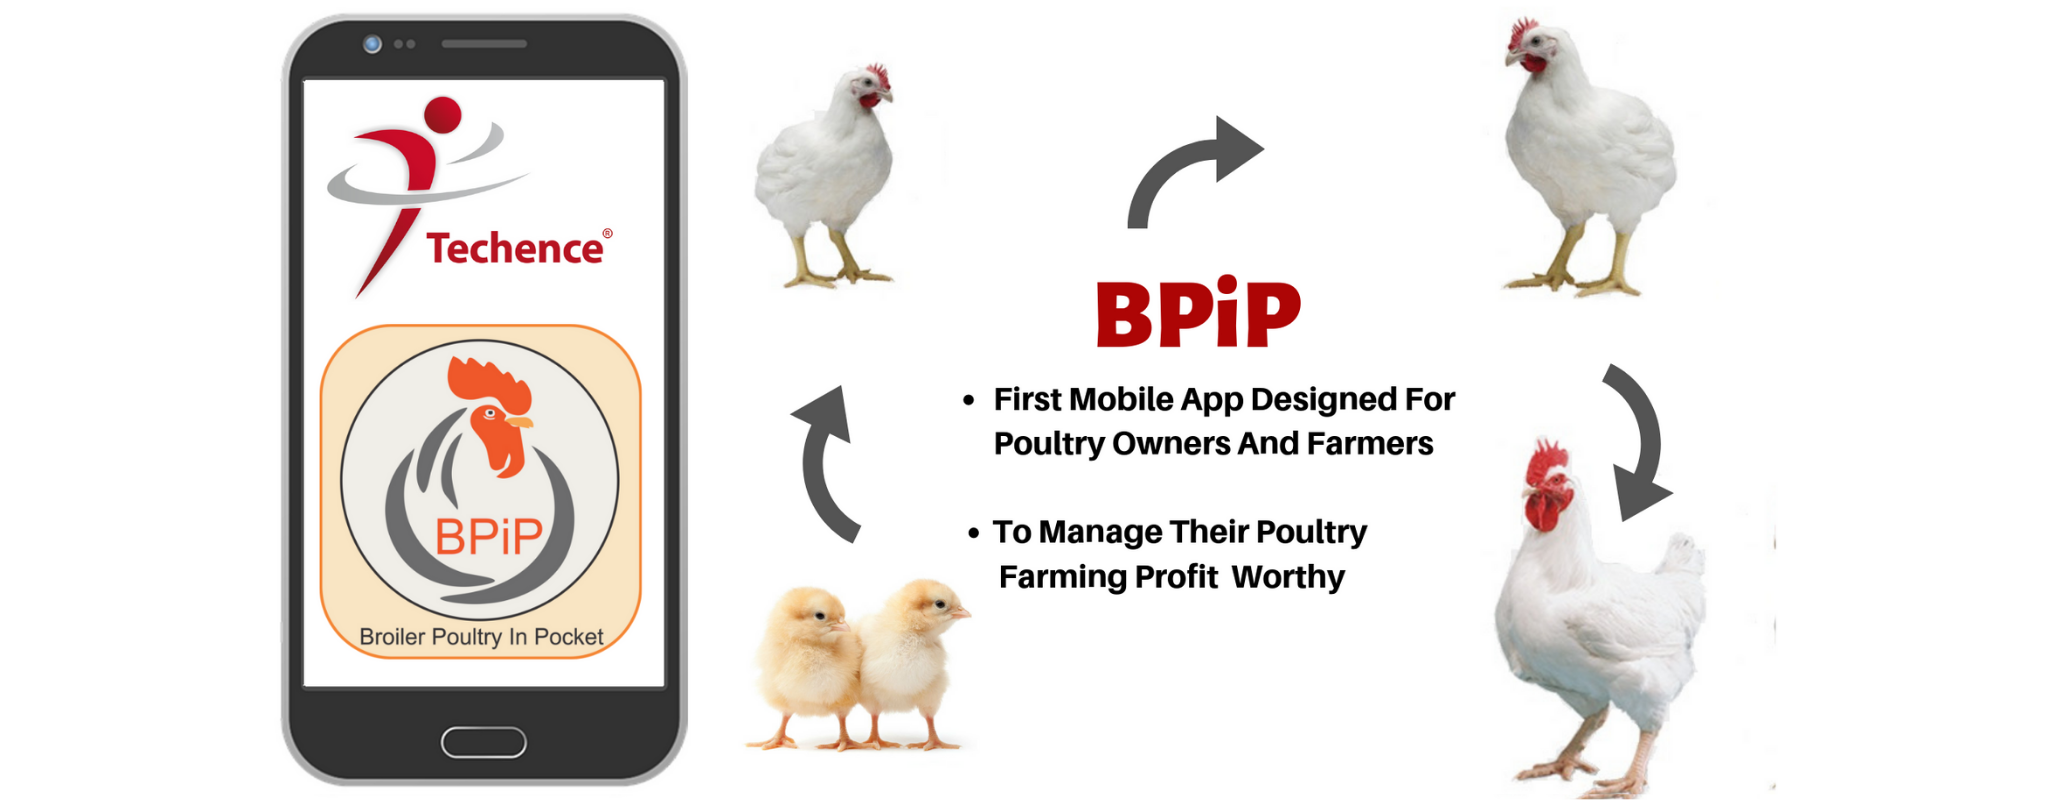 Broiler Poultry In Pocket1